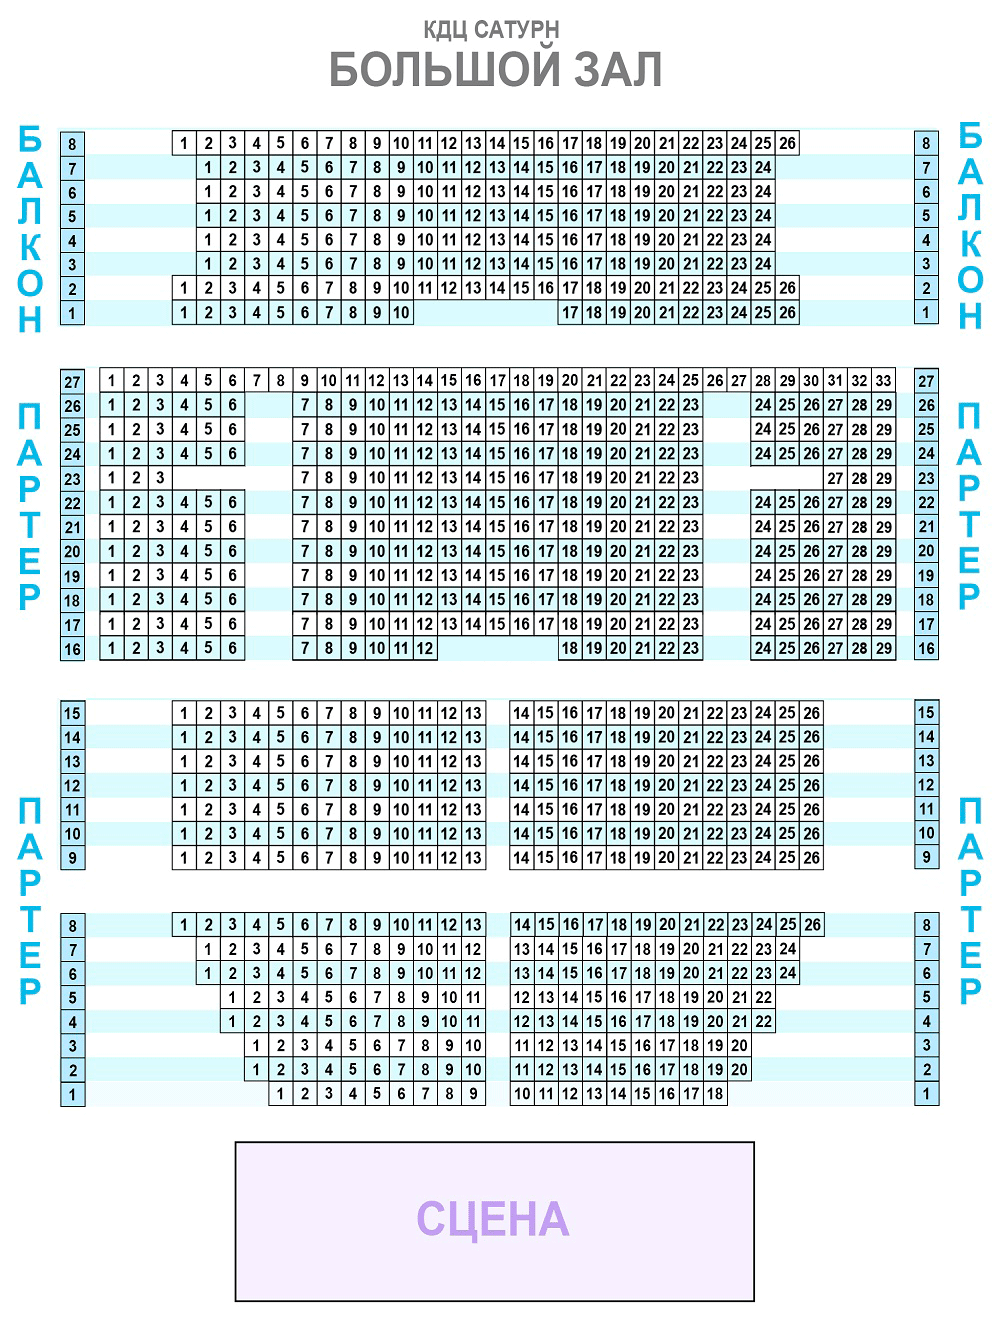 Схема зала для Сергей Лазарев (Раменское)